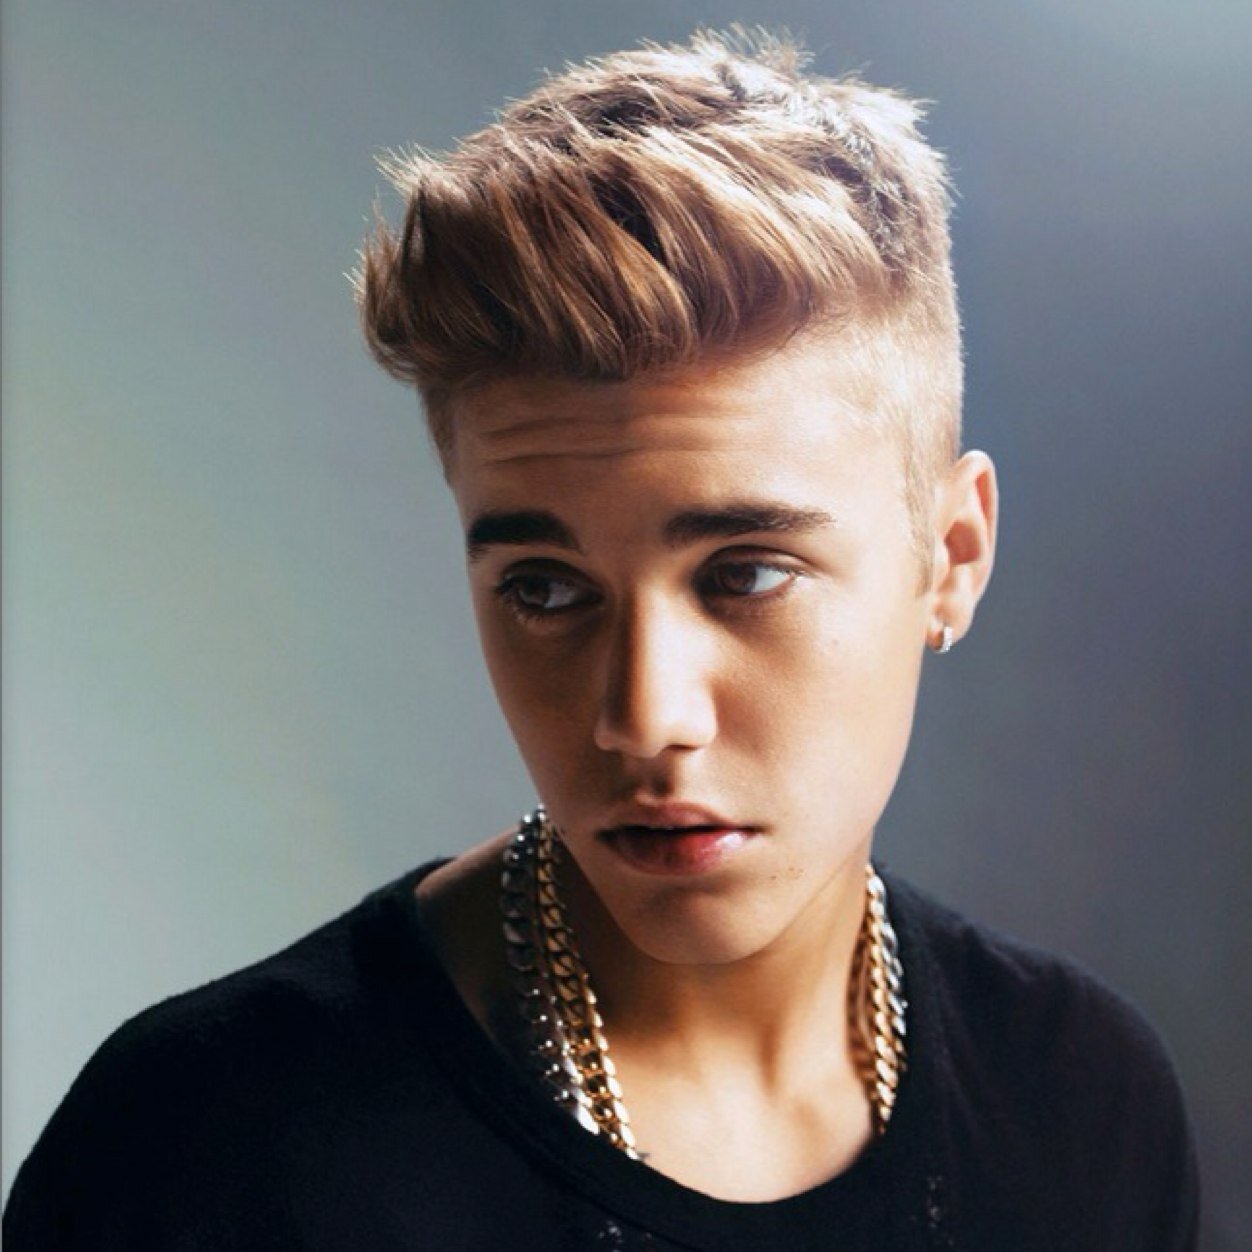 Justin Bieber sorprendió a sus fans con un show en la calle | FRECUENCIA RO.